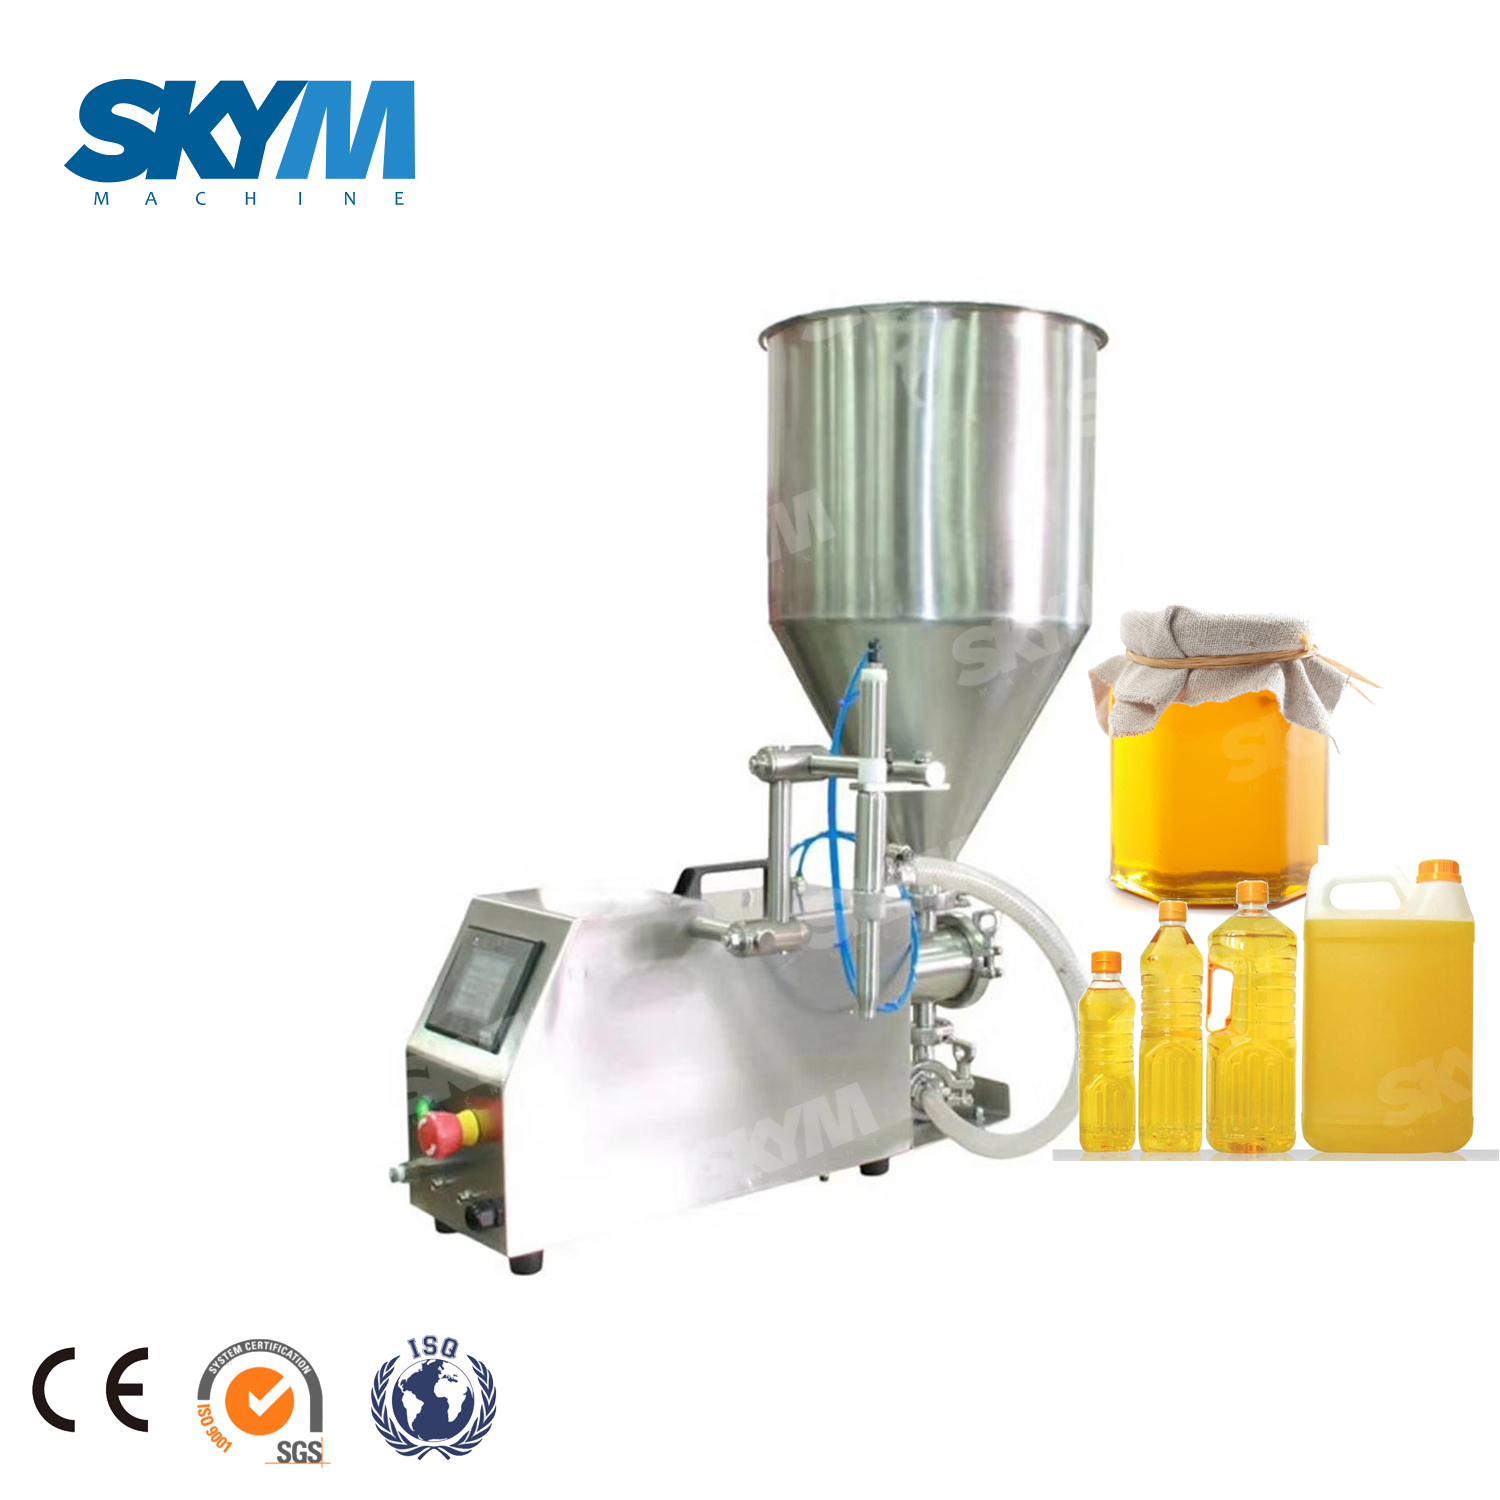 Huile comestible automatique Se-mi / équipement de remplissage d'usine de bouteille de miel